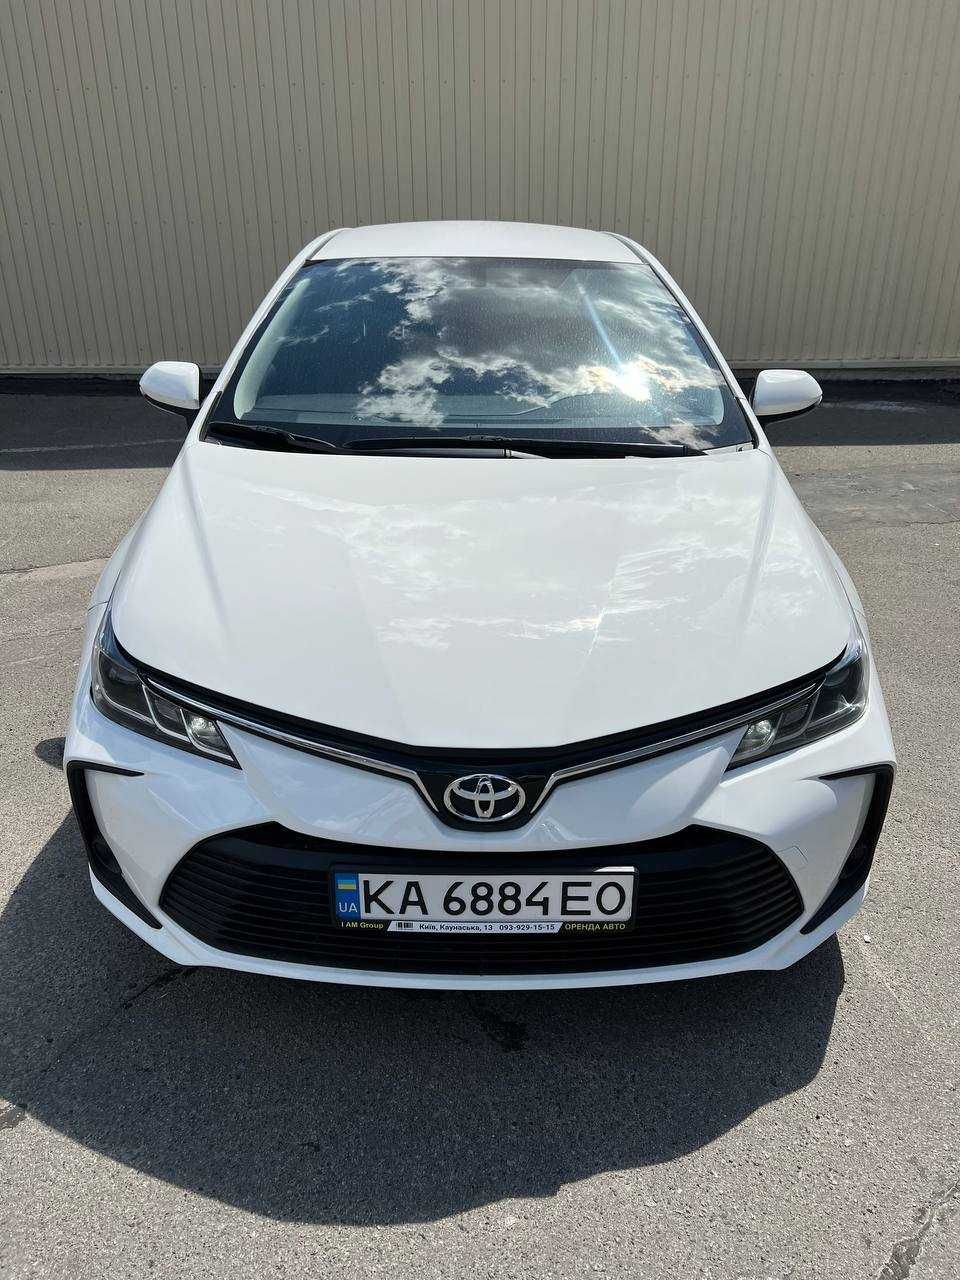 Оренда автомобіля авто під викуп Київ Toyota Corolla 2020